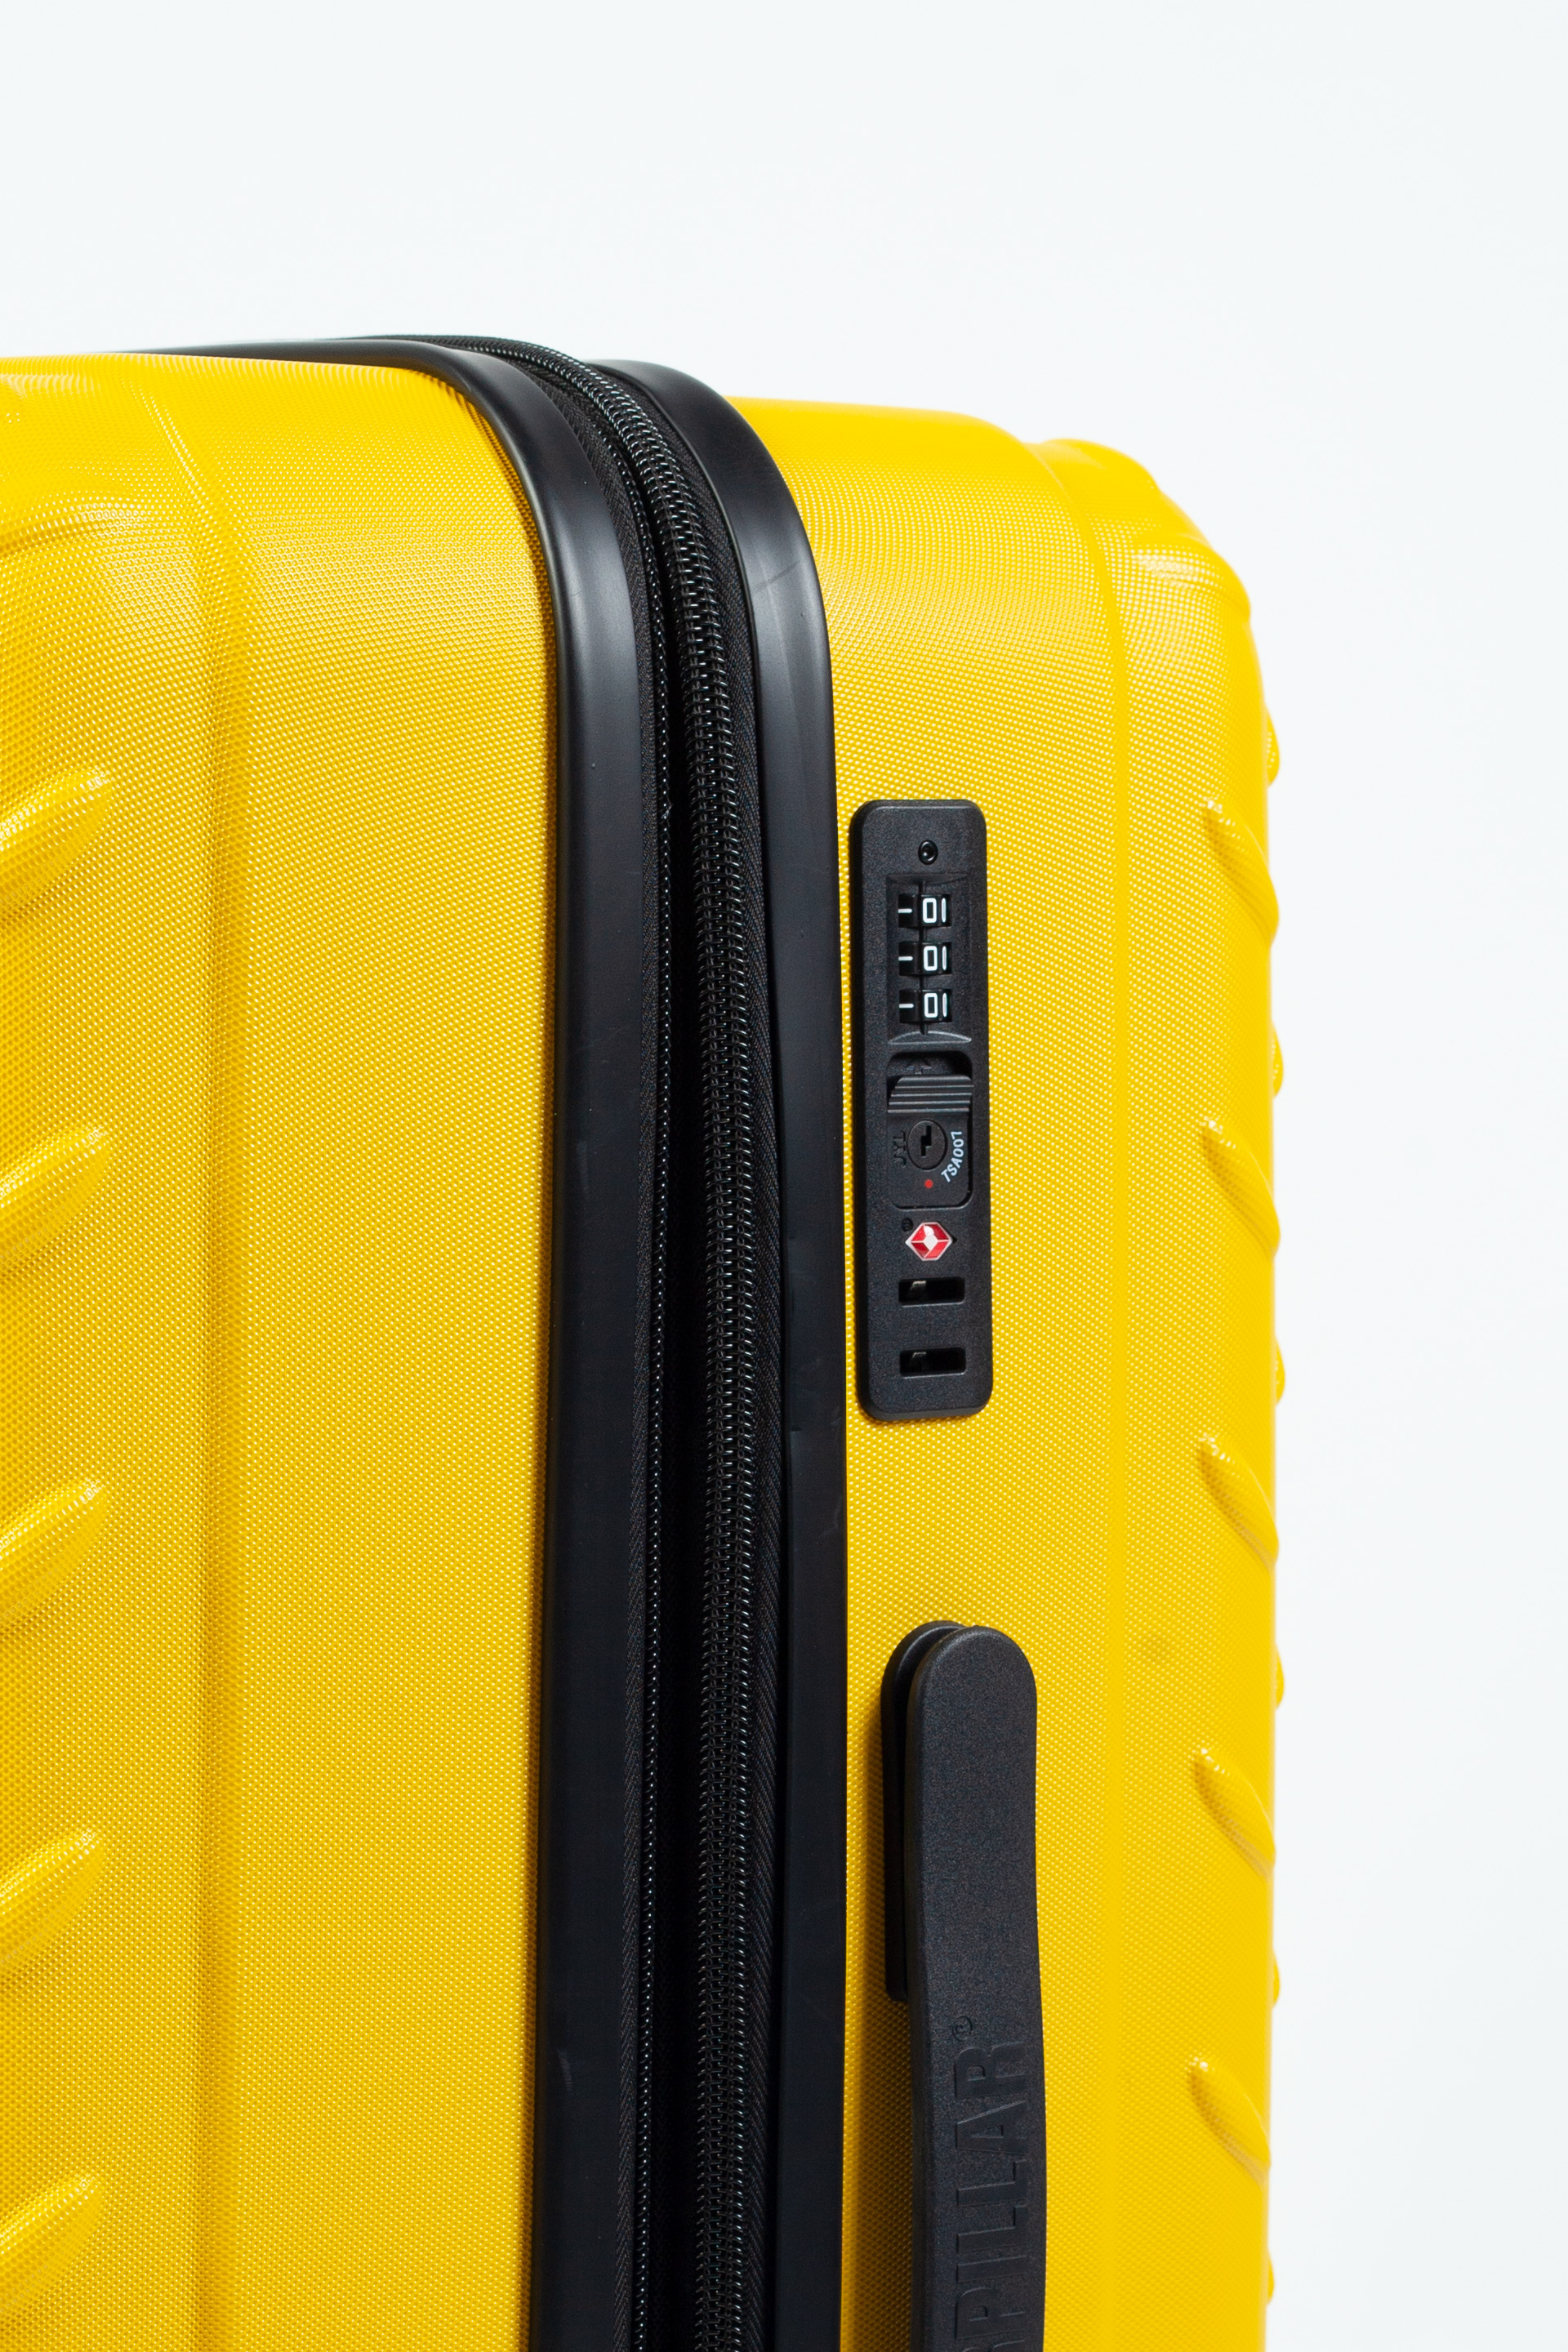 Travel suitcase CAT, medium 83685-217